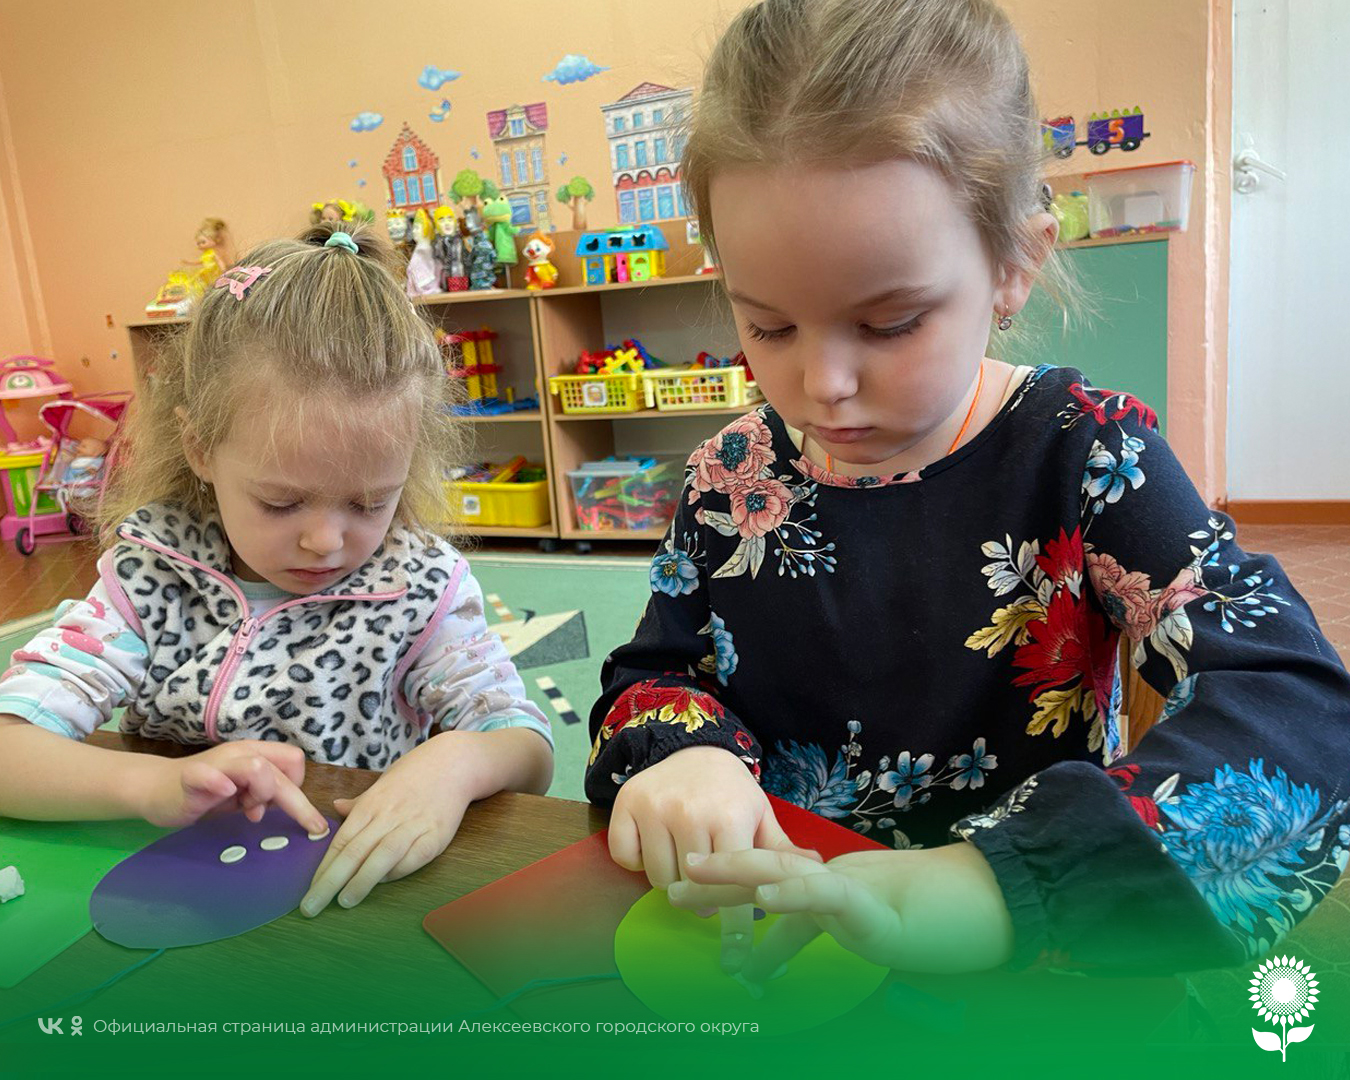 В детских садах Алексеевского городского округа прошел праздник – День дарения елочных шаров